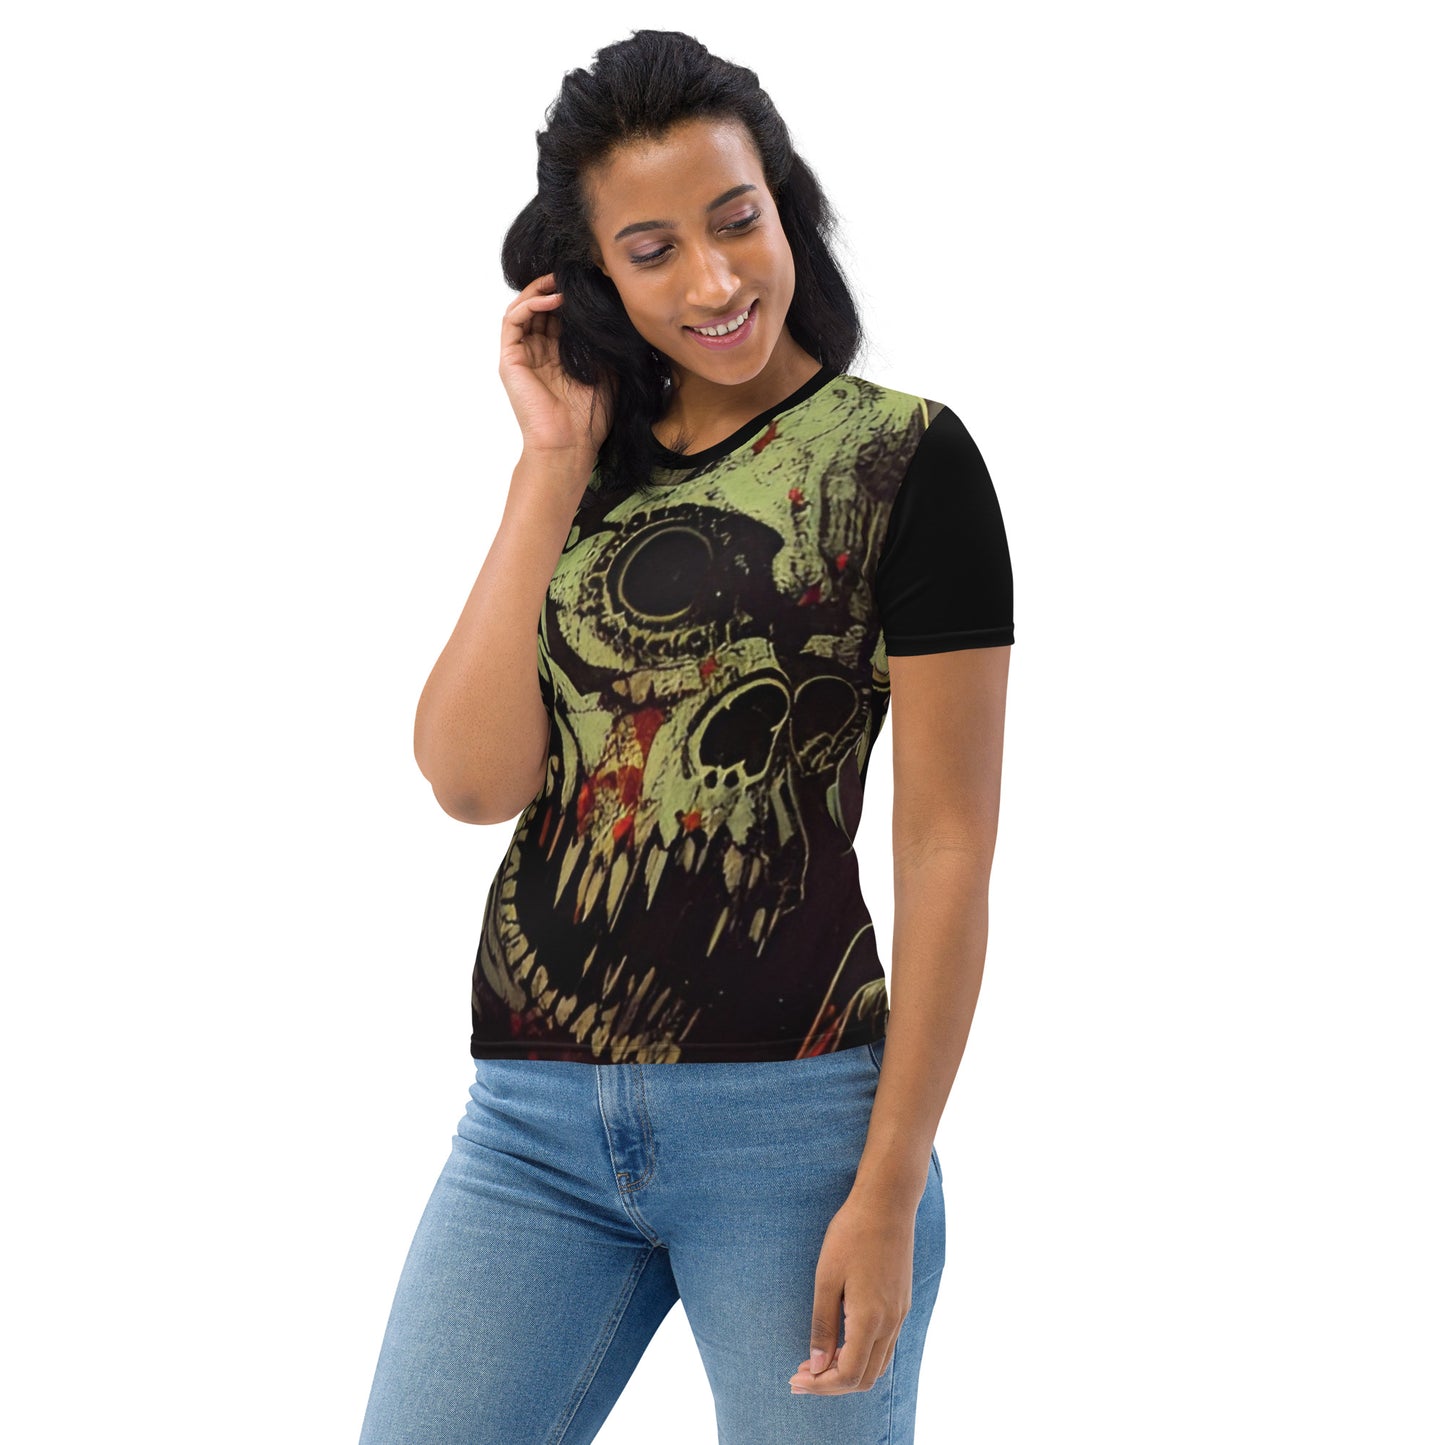 Retro Audio Skull Women's T-shirt